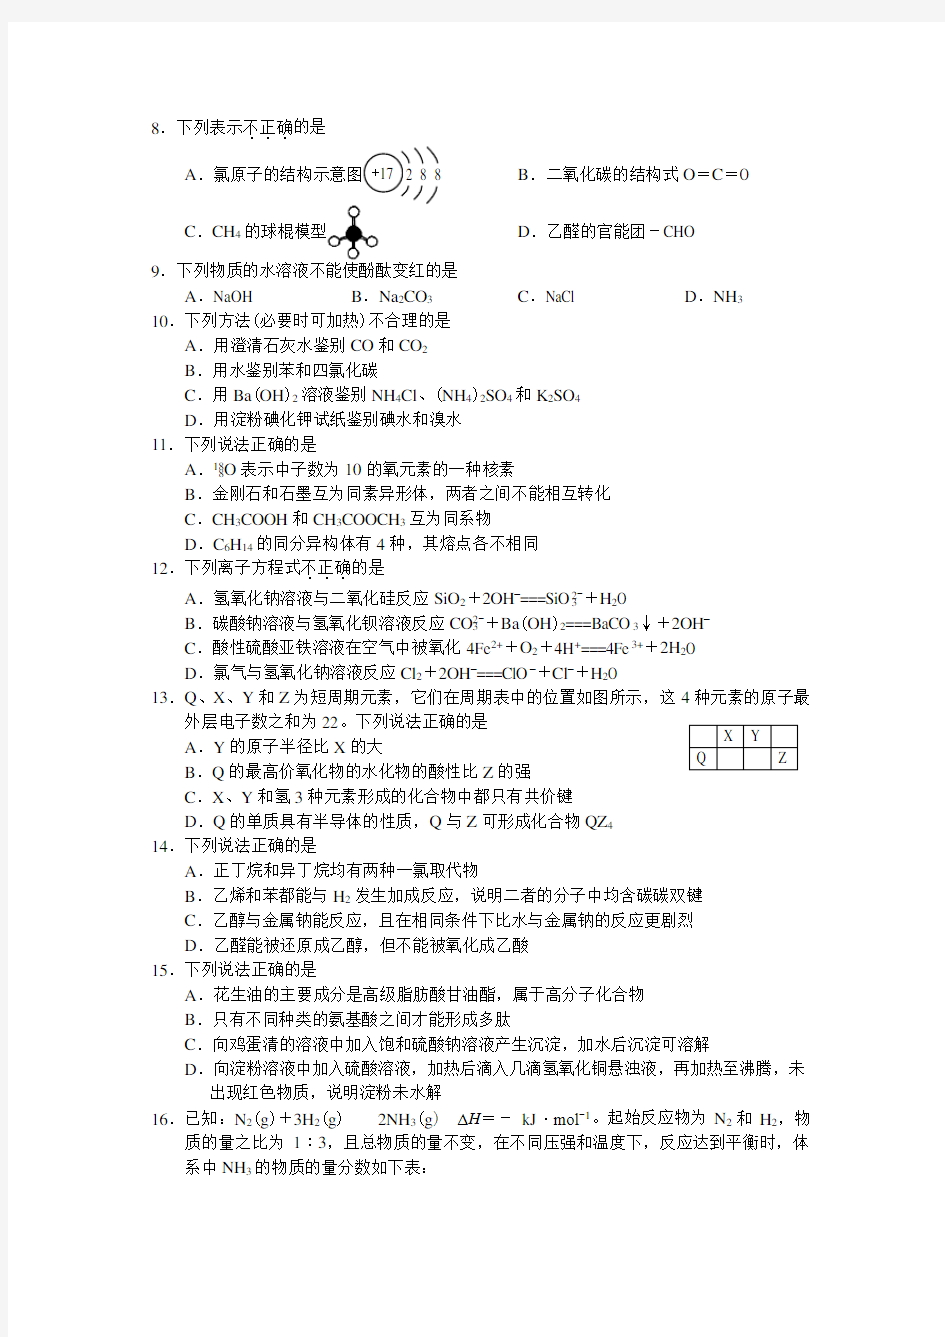 2017年11月浙江高中化学学考选专业考试题与内容答案